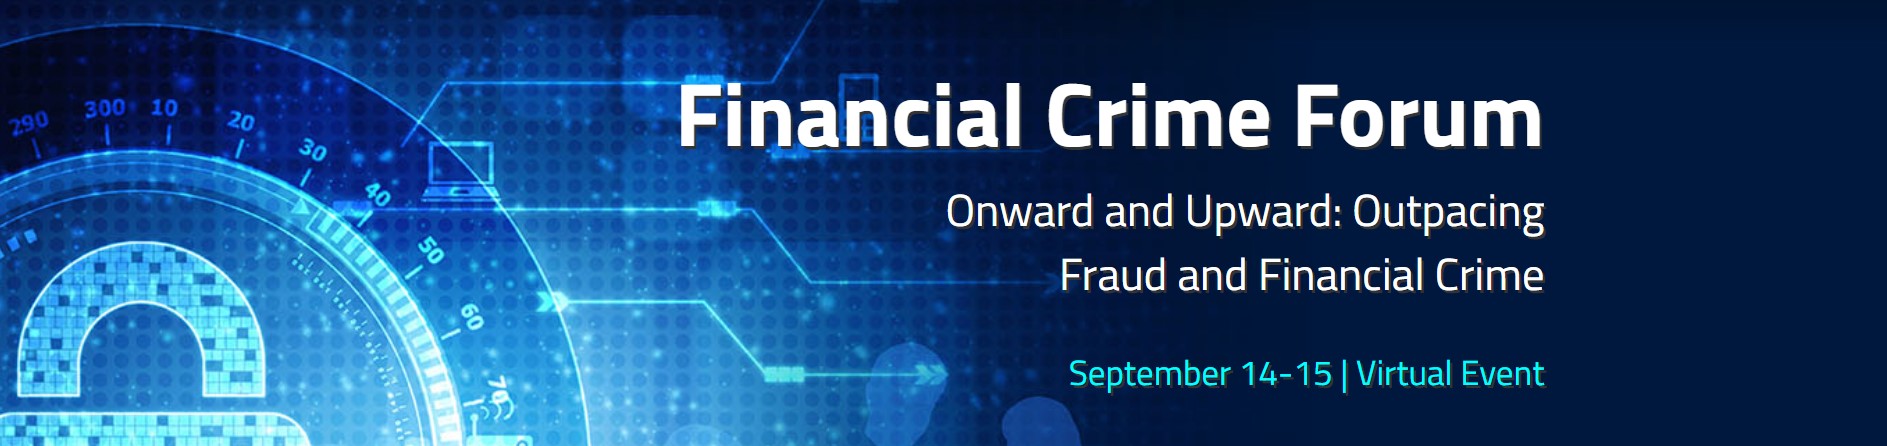 Financial Crime Forum